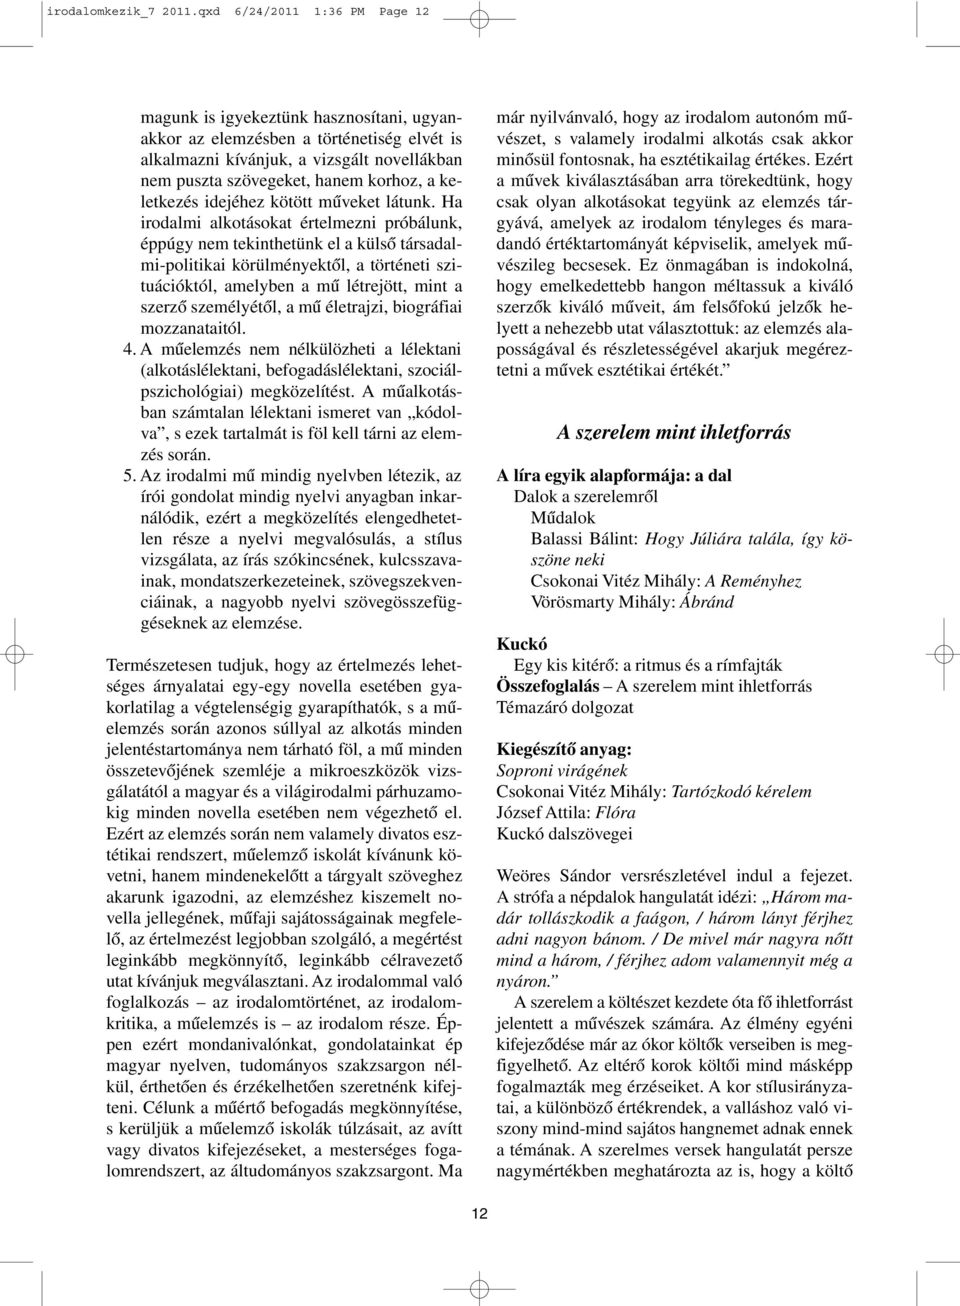 Radóczné Bálint Ildikó TANÁRI KÉZIKÖNYV. az Irodalom 7. tanításához - PDF  Ingyenes letöltés